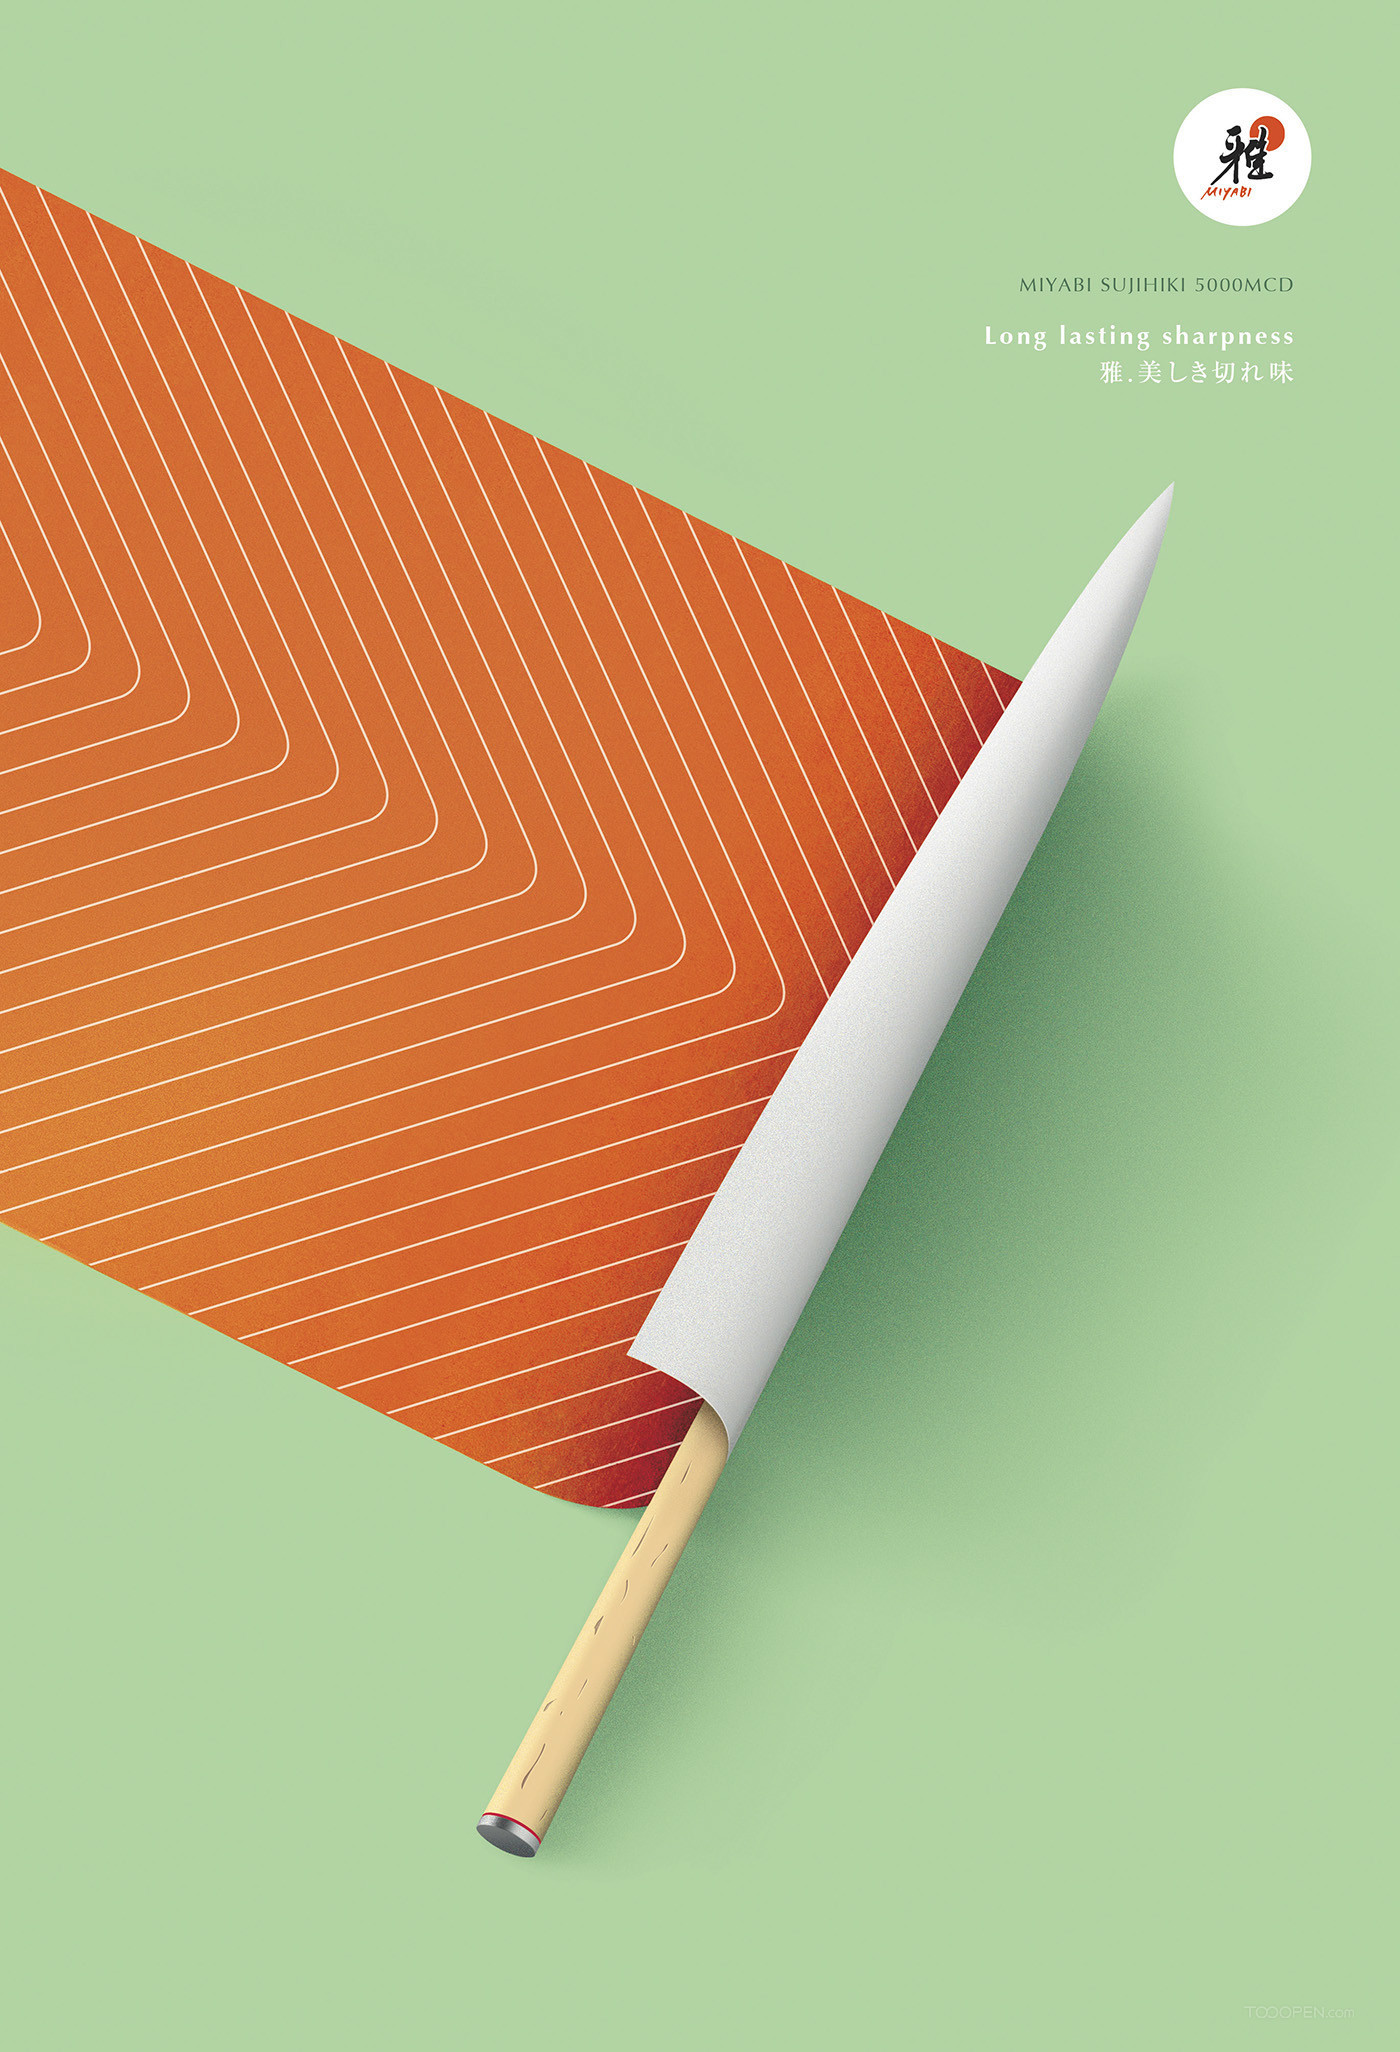 日本刀具创意广告海报设计欣赏-02